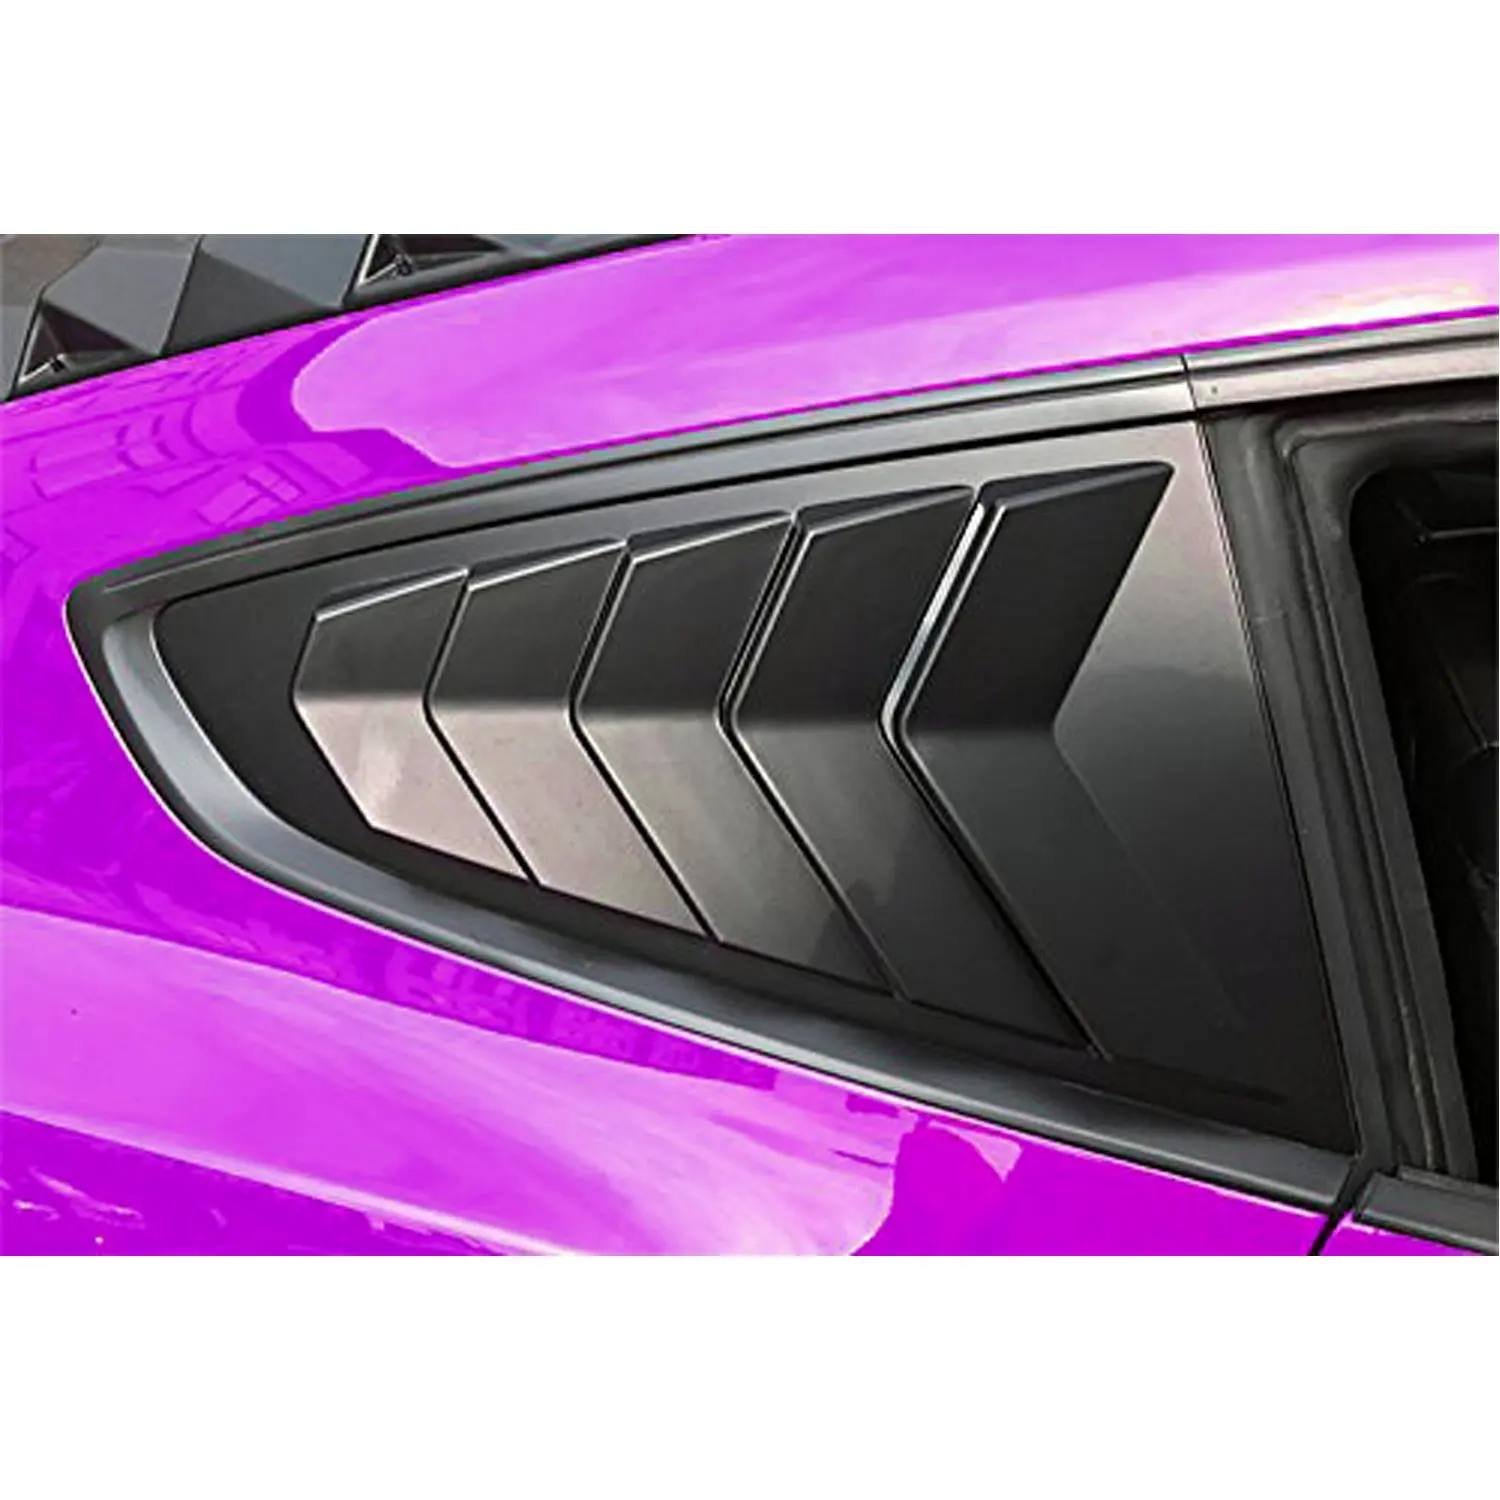 1 матовый черный GT Lambo стиль окно Совок жалюзи ABS окно козырек крышка защита от солнца дождь тени вентиляционное отверстие для Ford Mustang